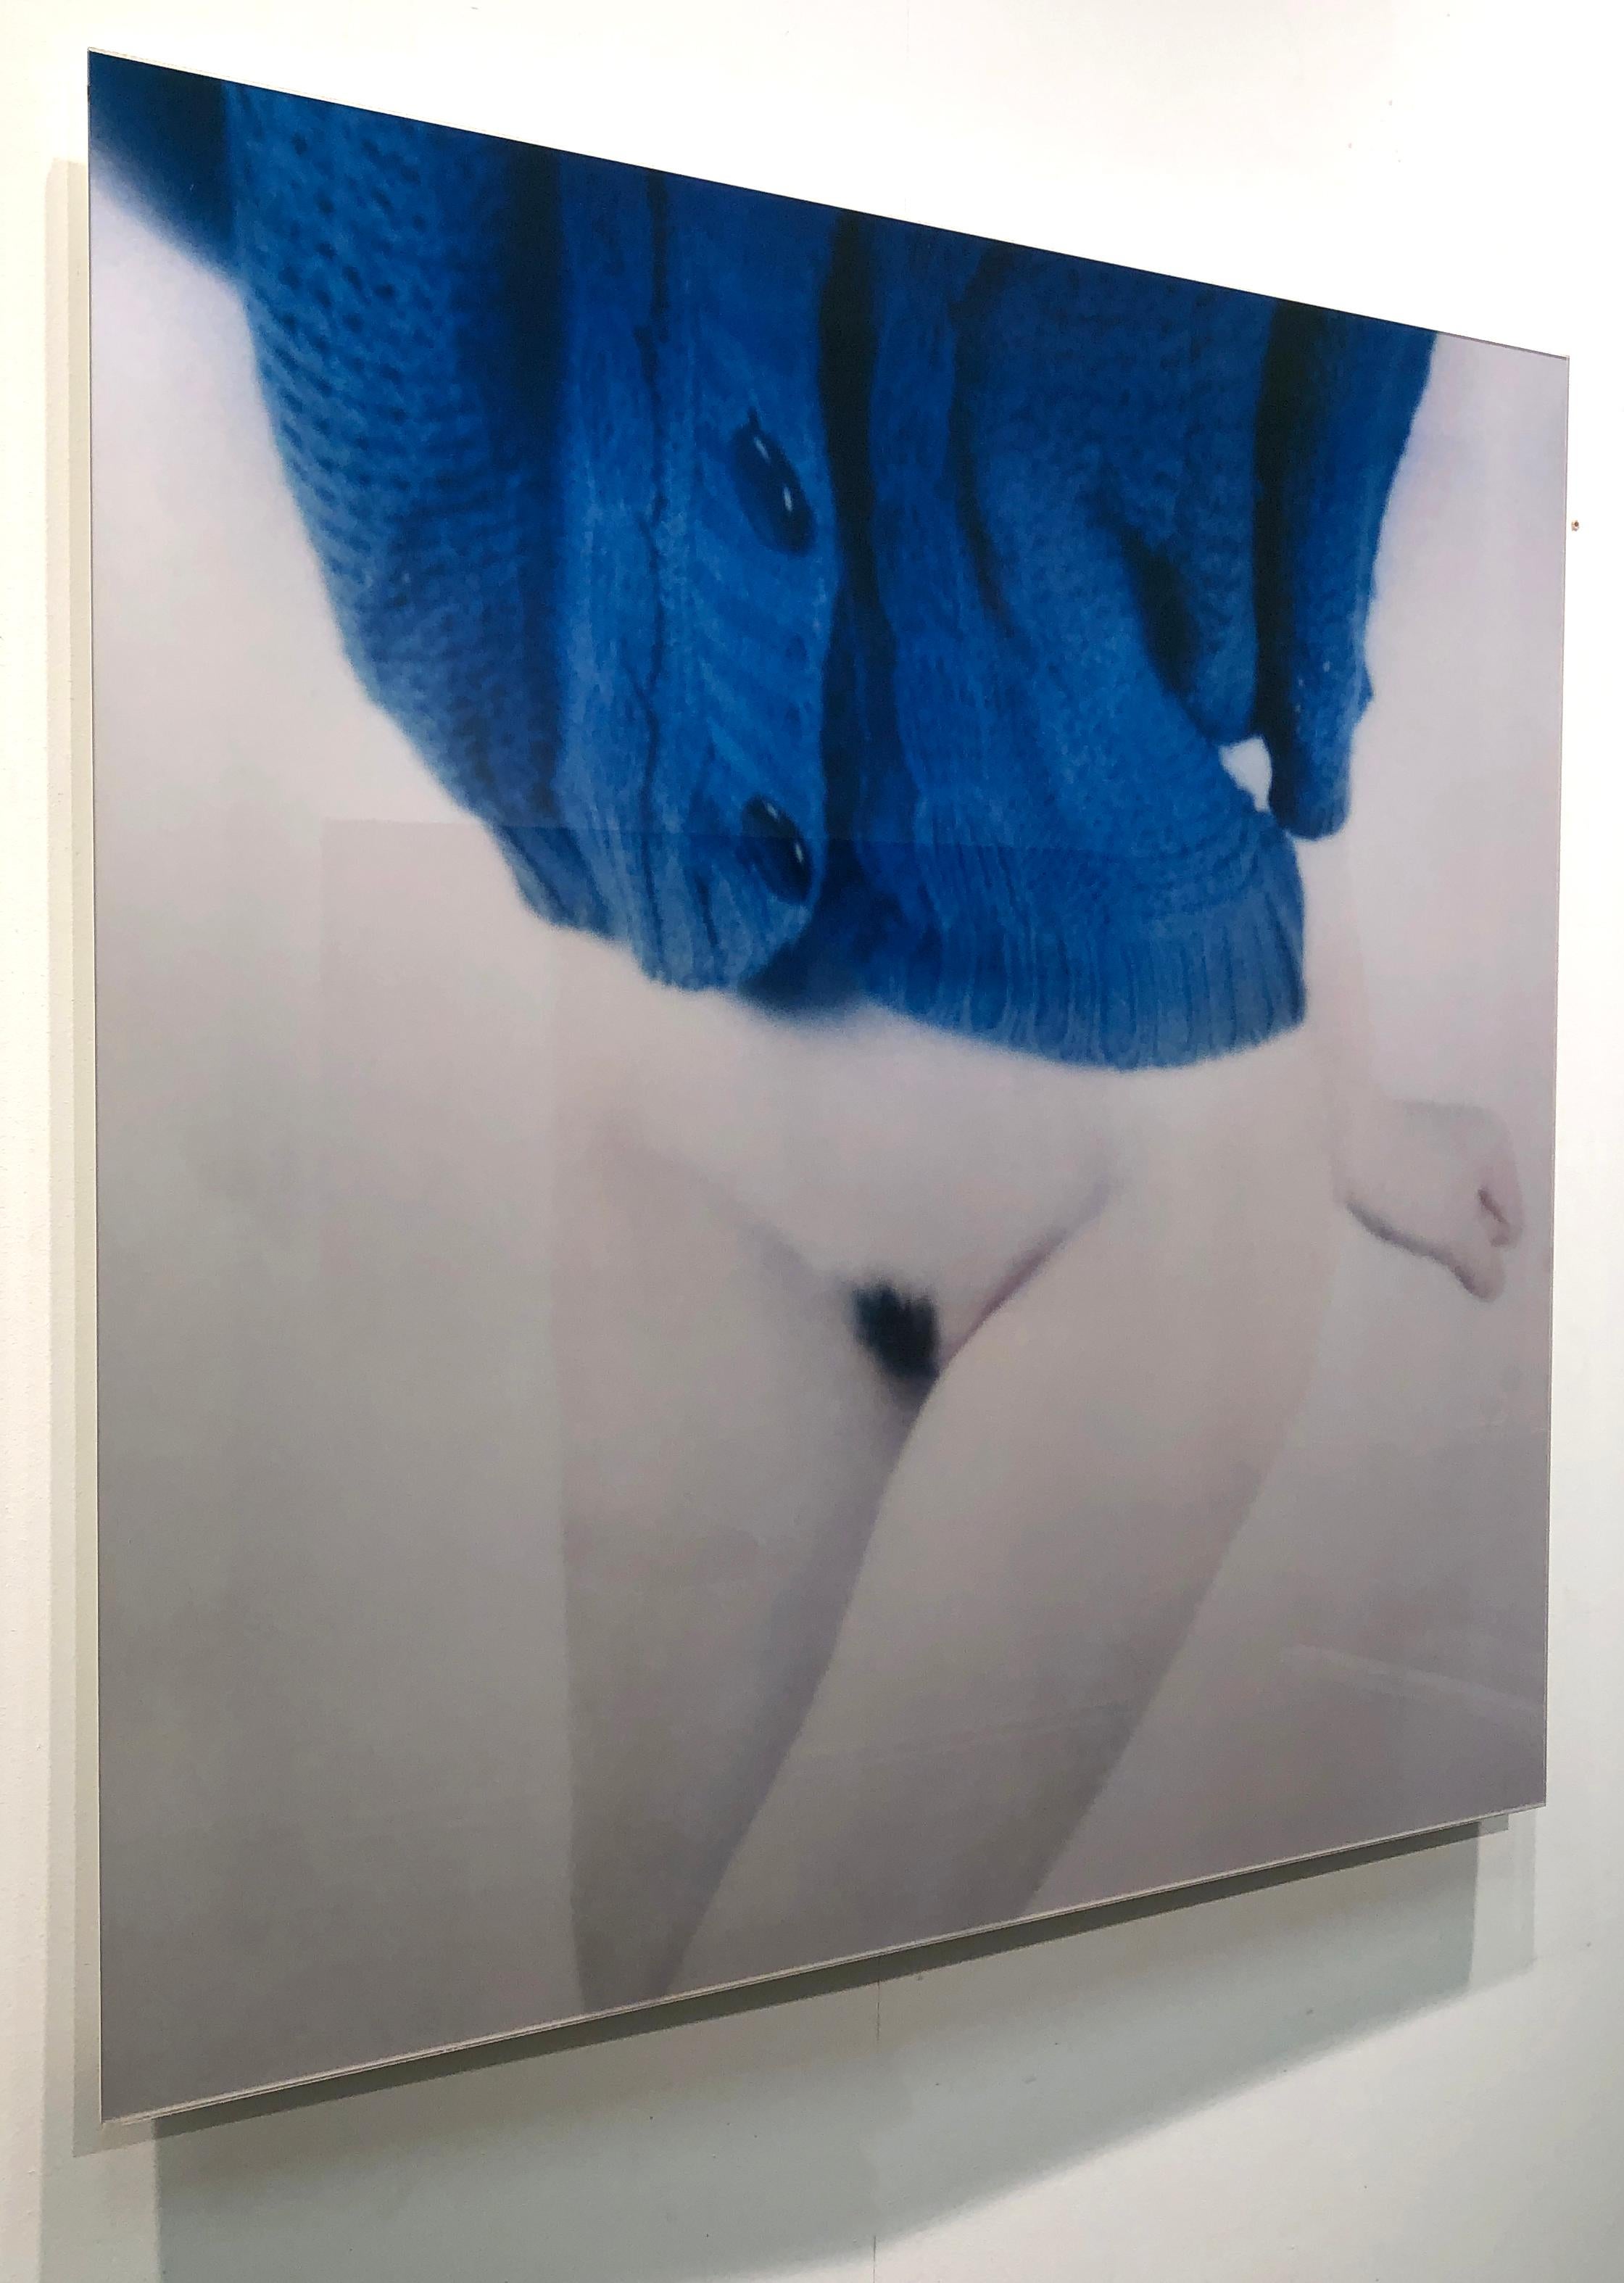 tricoté semi-nu et bleu, issu de la série de photographies Bright Bodies - Contemporain Photograph par Mira Loew